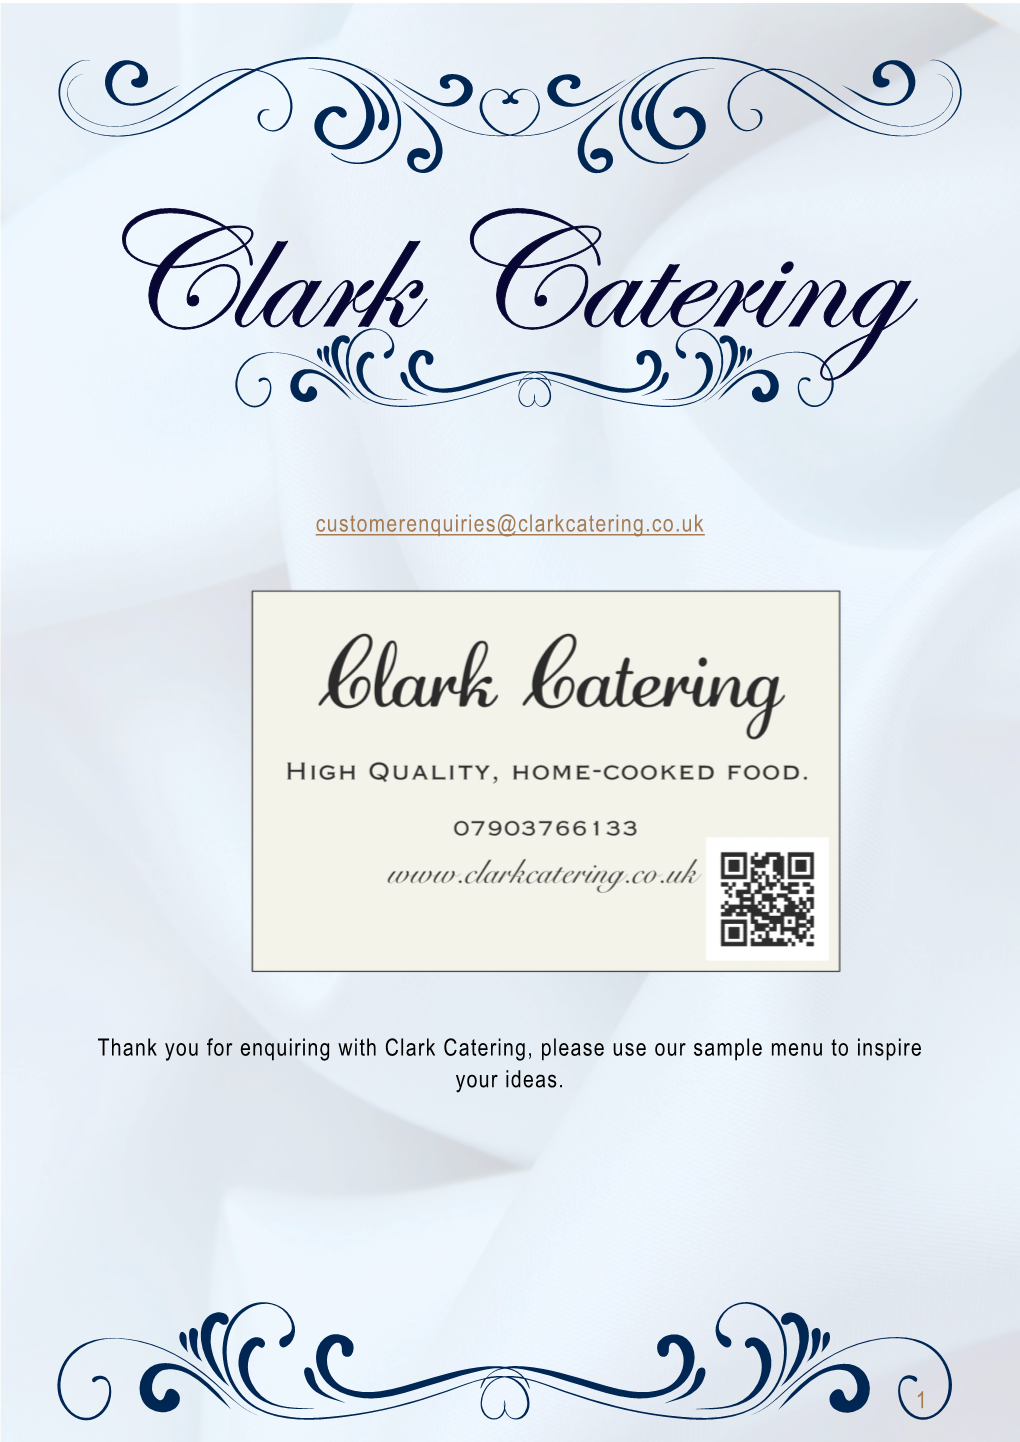 1 Customerenquiries@Clarkcatering